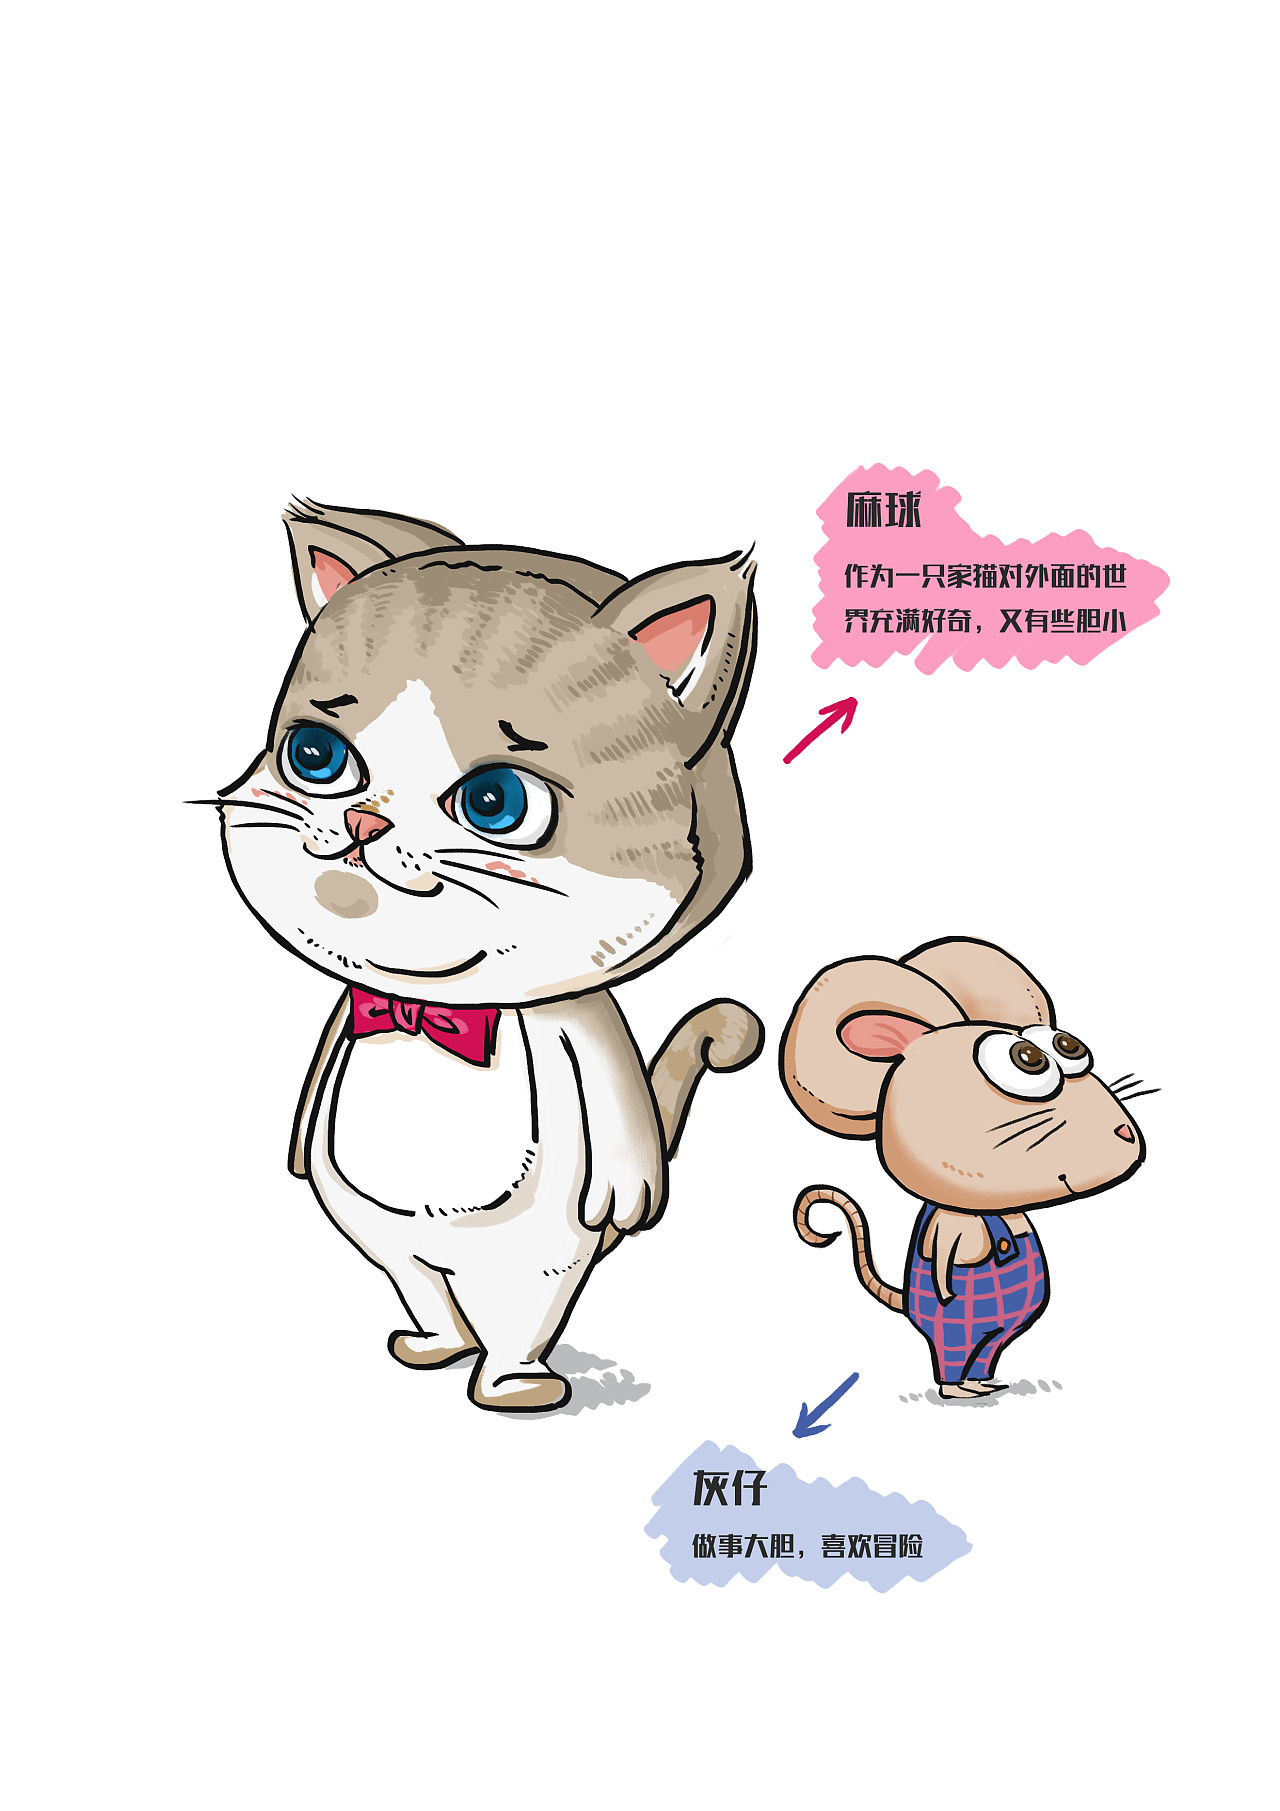 《猫和老鼠》1940-2014年画风演变史_哔哩哔哩 (゜-゜)つロ 干杯~-bilibili